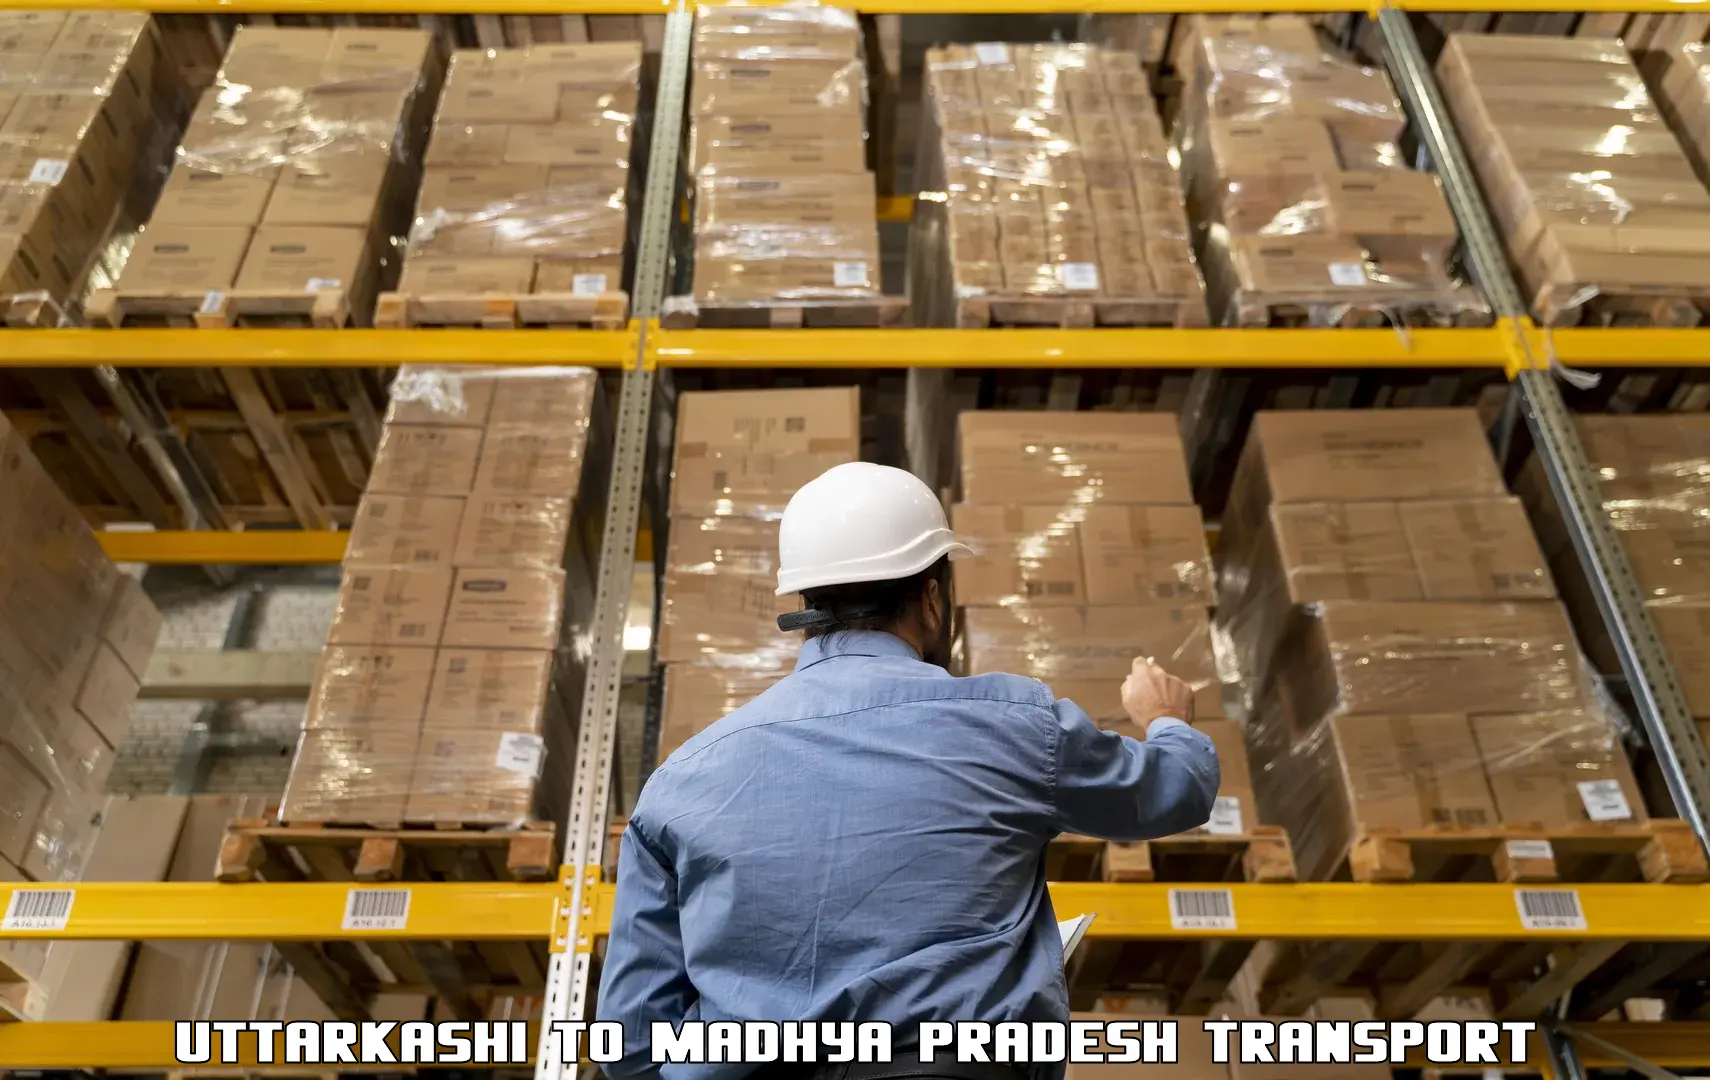 Cargo train transport services Uttarkashi to Ambah